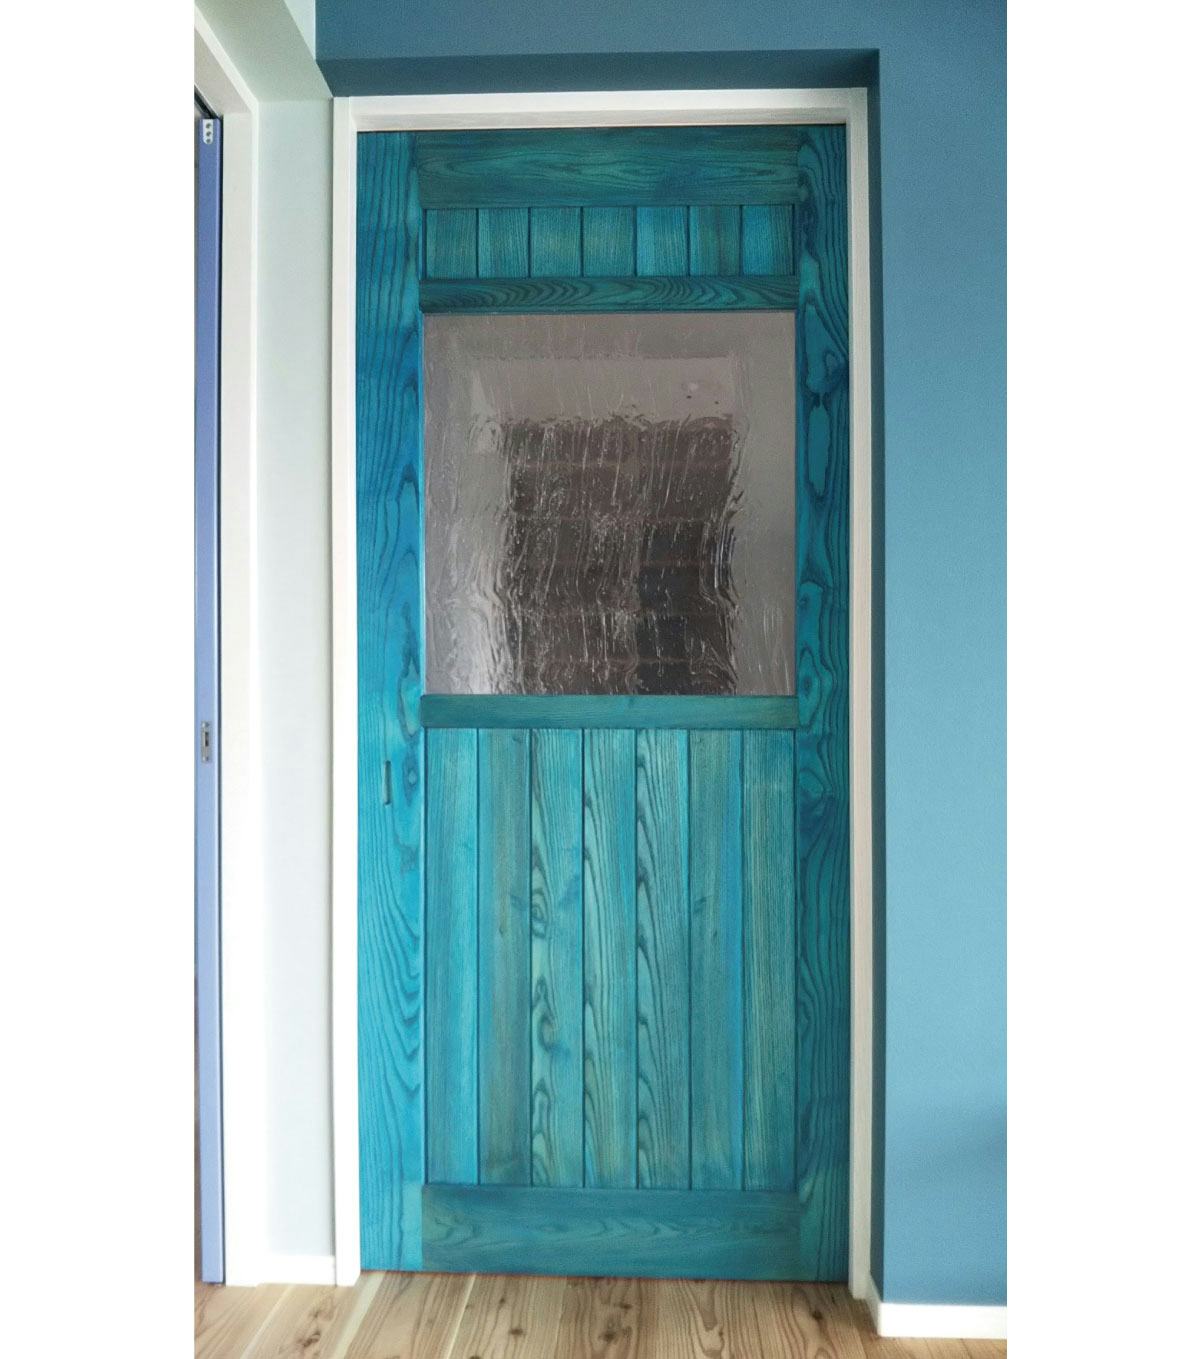 ターコイズブルーのドアに「アルトドイッチェK」を使用したお写真